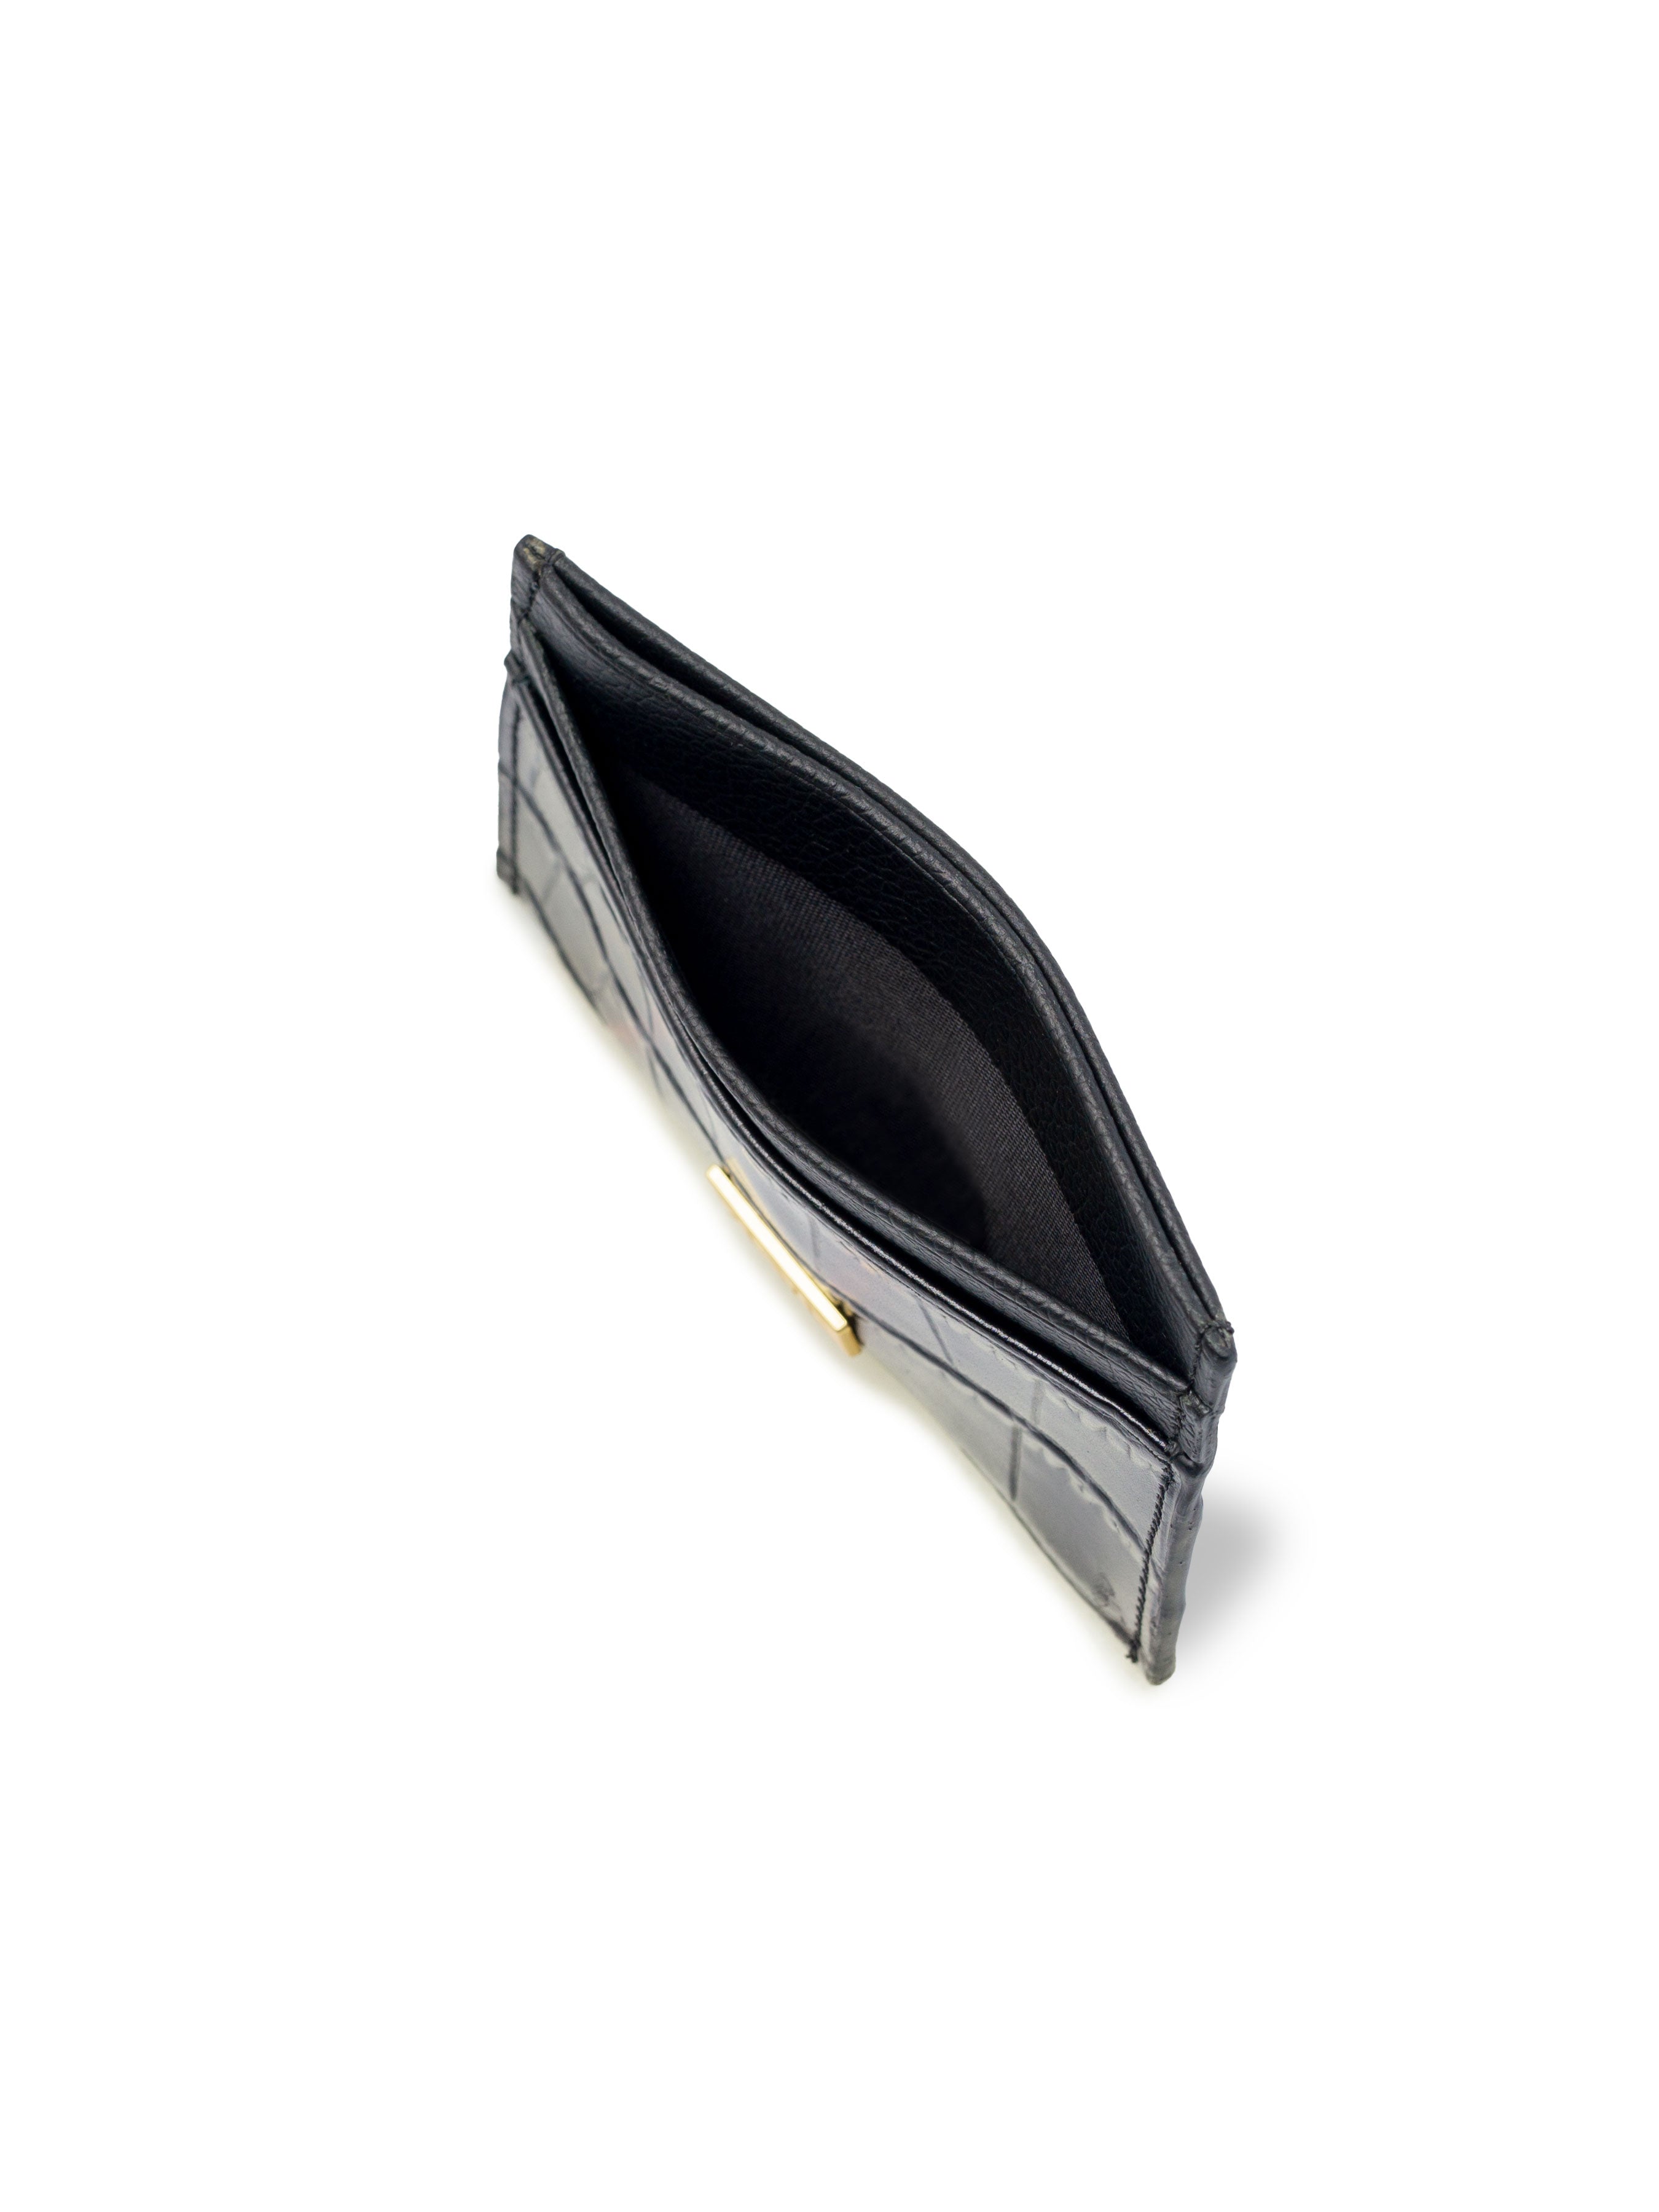 Card Holder - Black Matte Croco Leather - Zeve Shoes